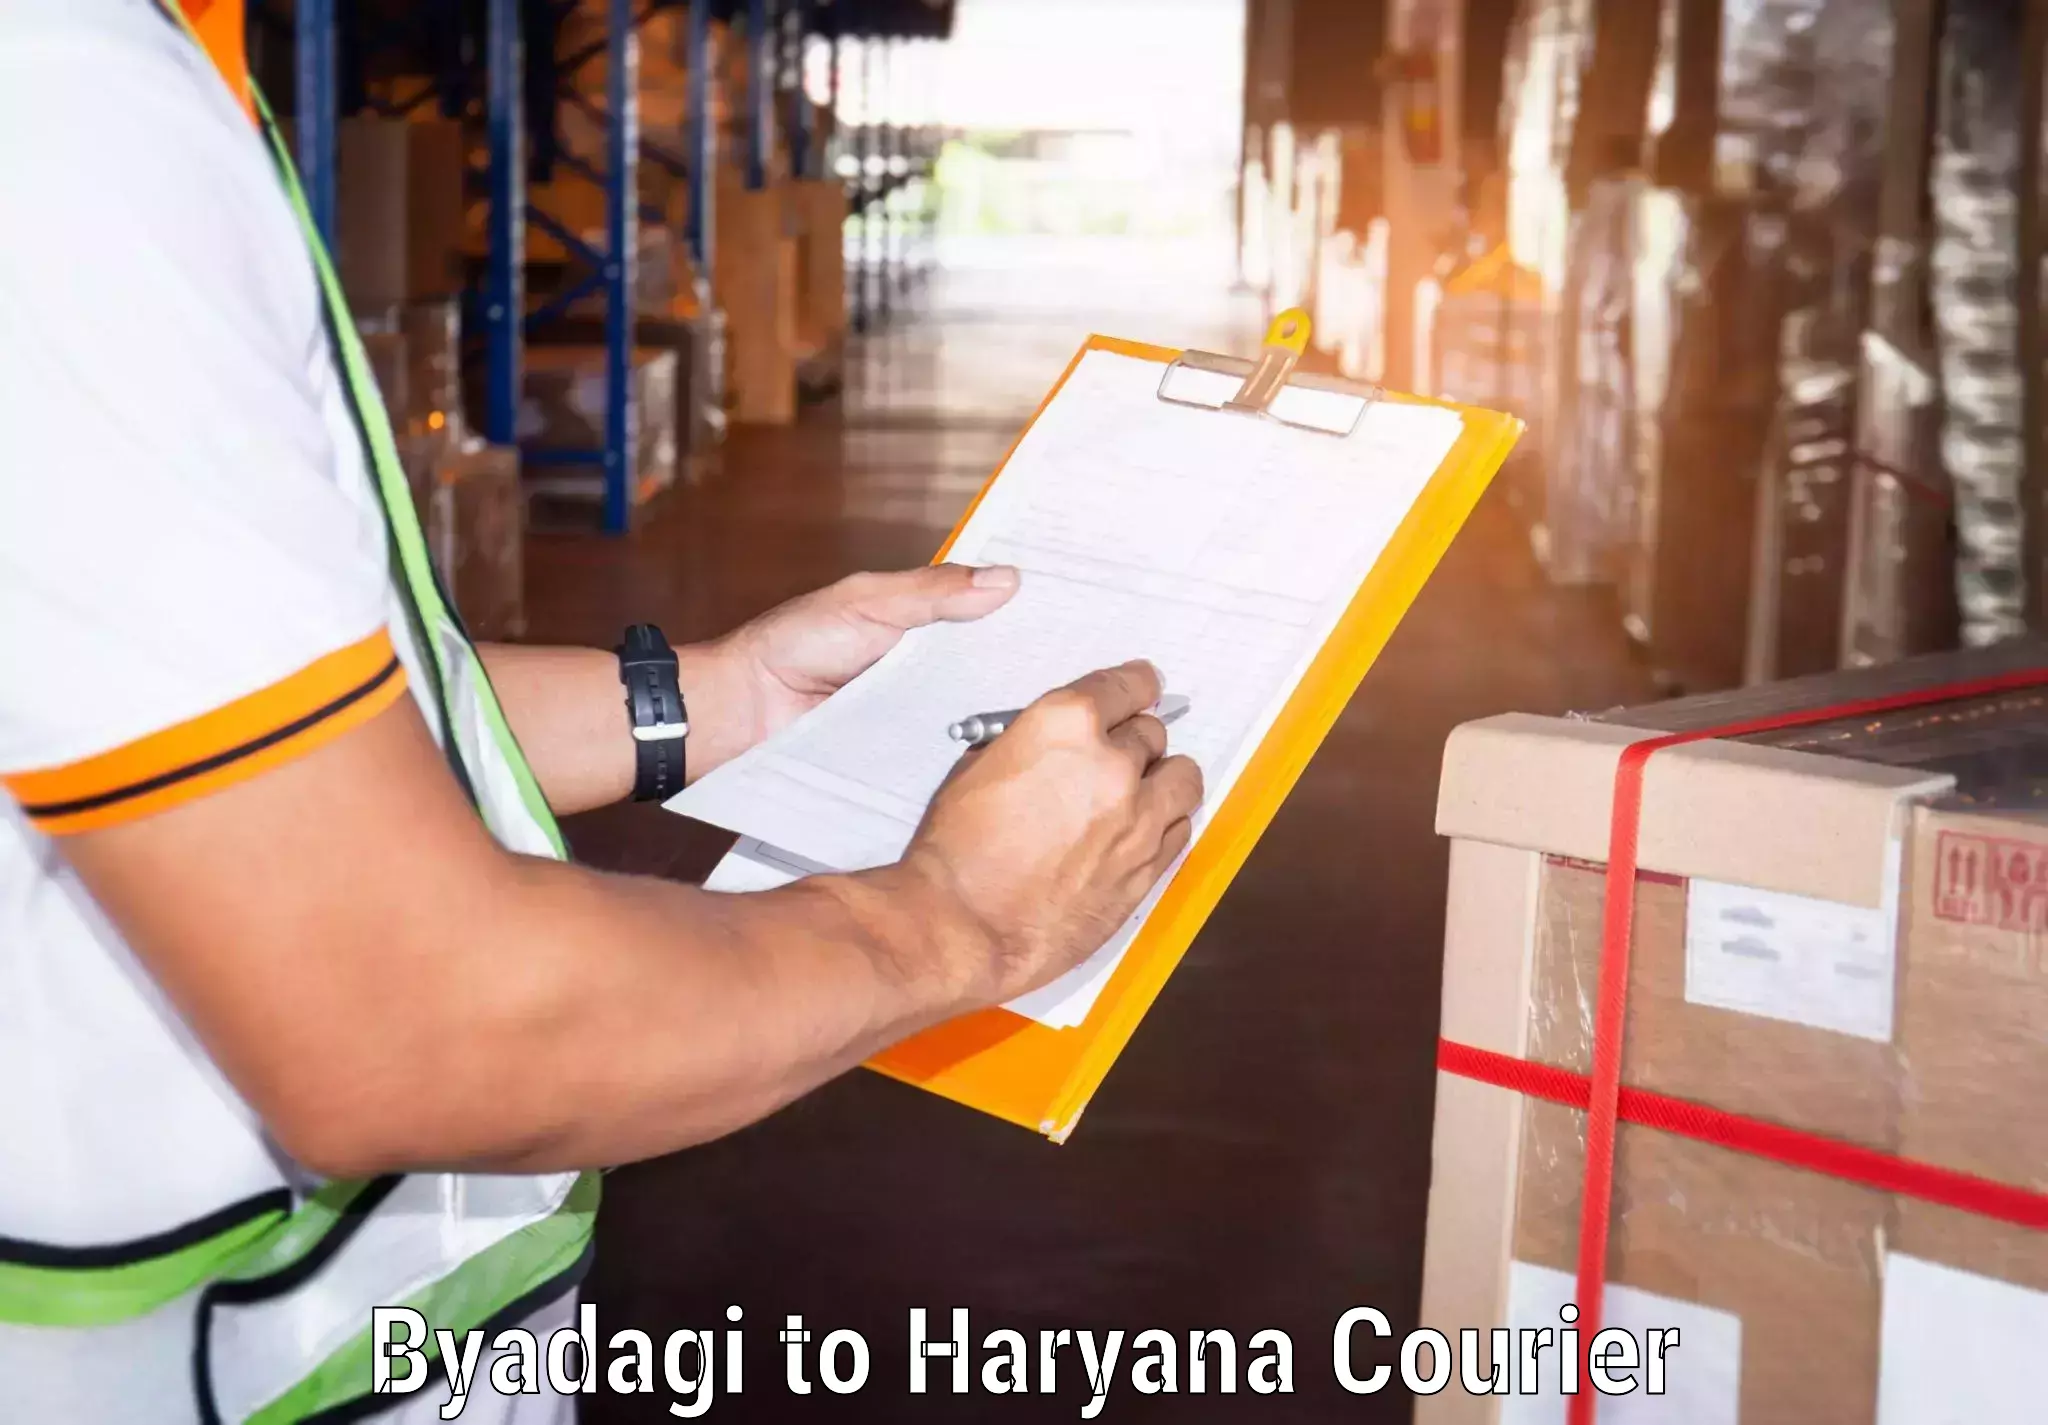 Ground shipping Byadagi to Chaudhary Charan Singh Haryana Agricultural University Hisar